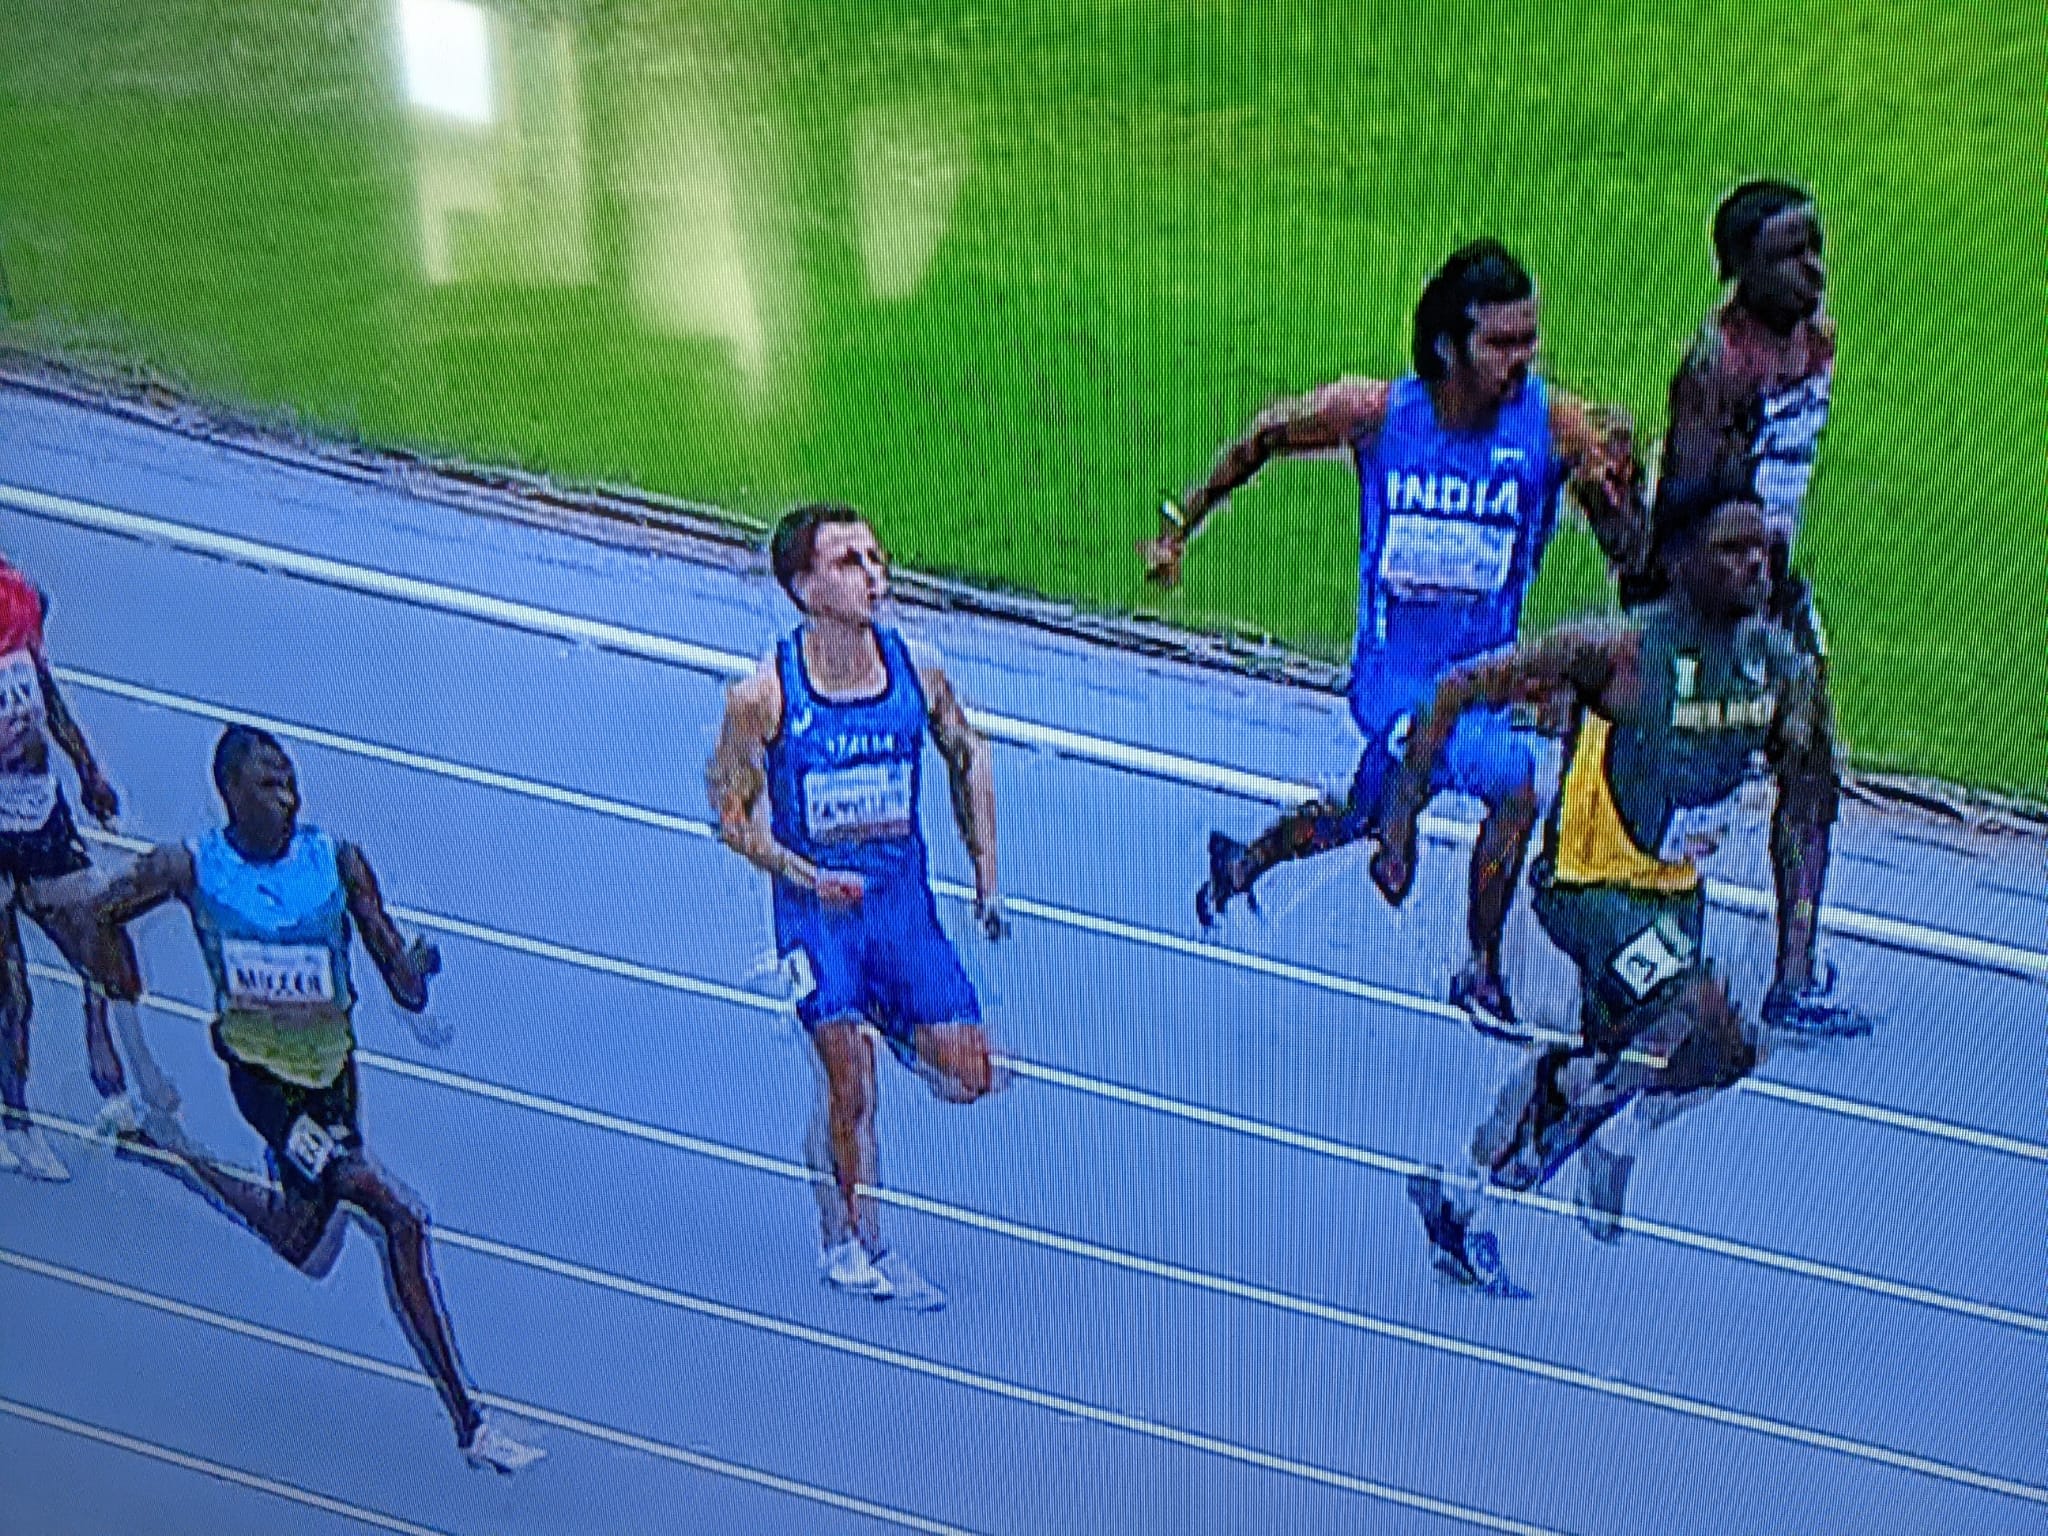 Atletica, semifinale raggiunta per Filippo Cappelletti nei 200 metri ai mondiali U20